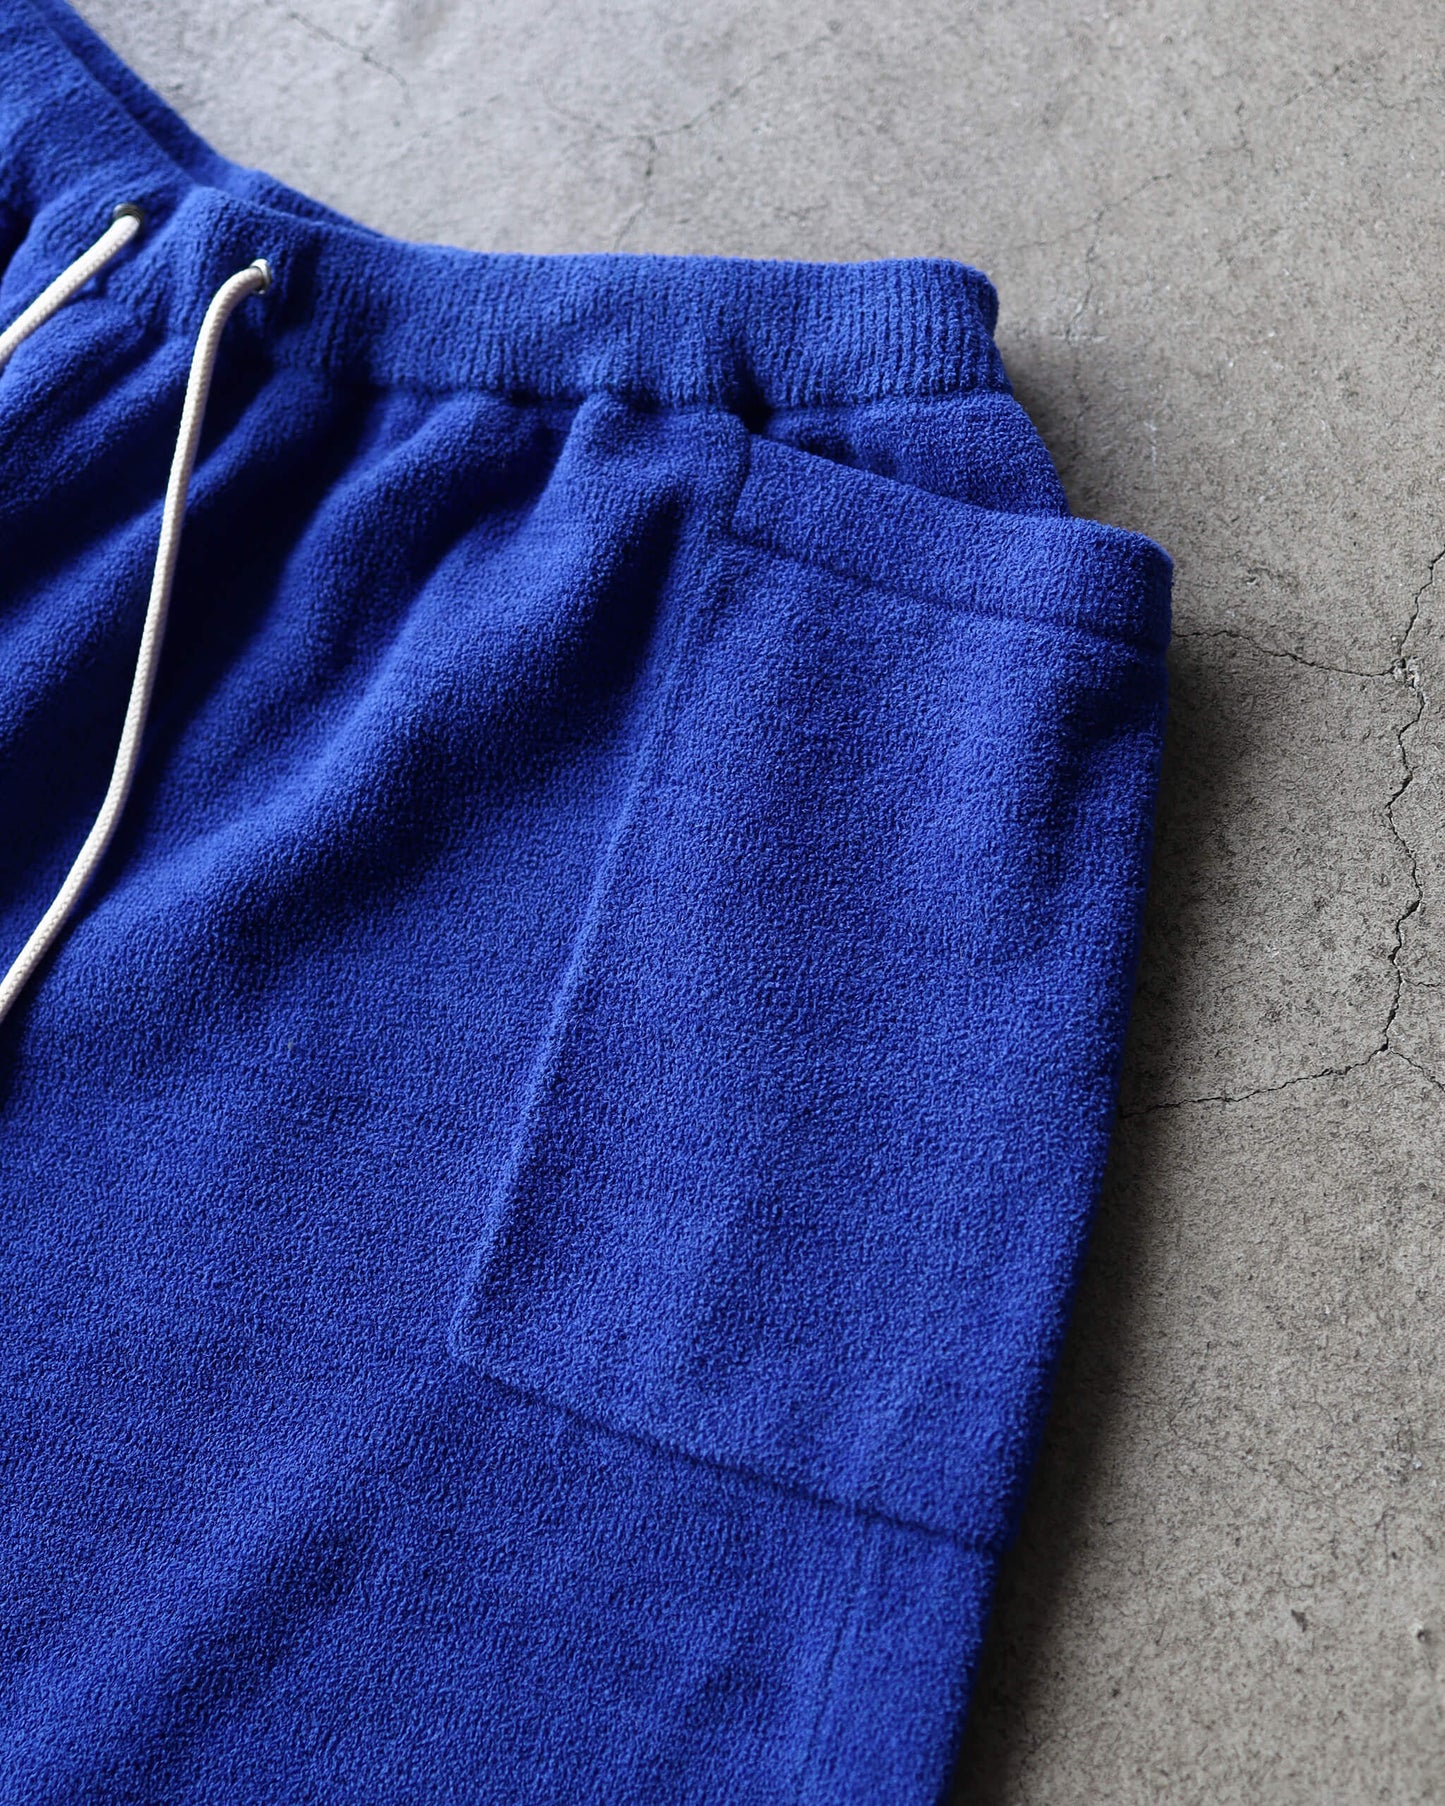 Cotton cashmere pile Marine shorts "Oriental blue"